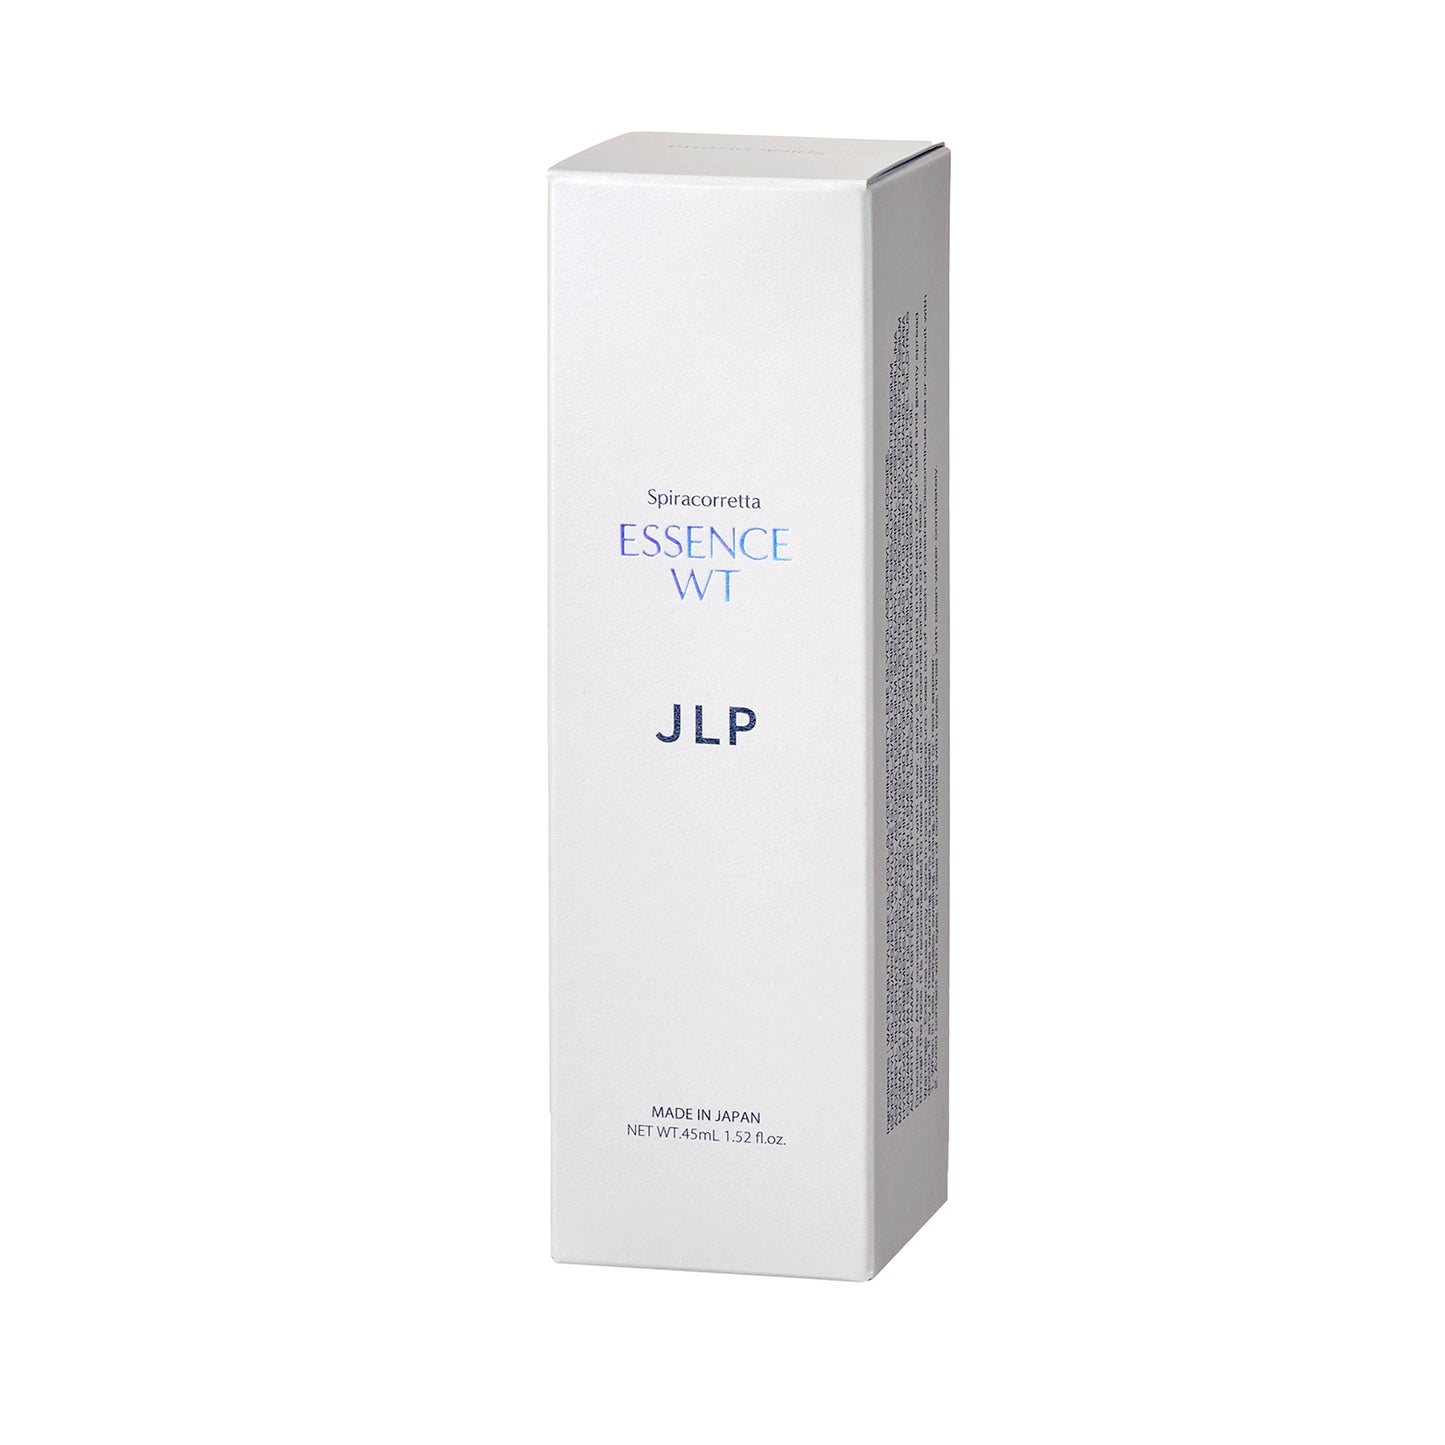 JLP - Spiracorretta Essence WT 45ml - Essence Anti Aging - Pelembab Wajah